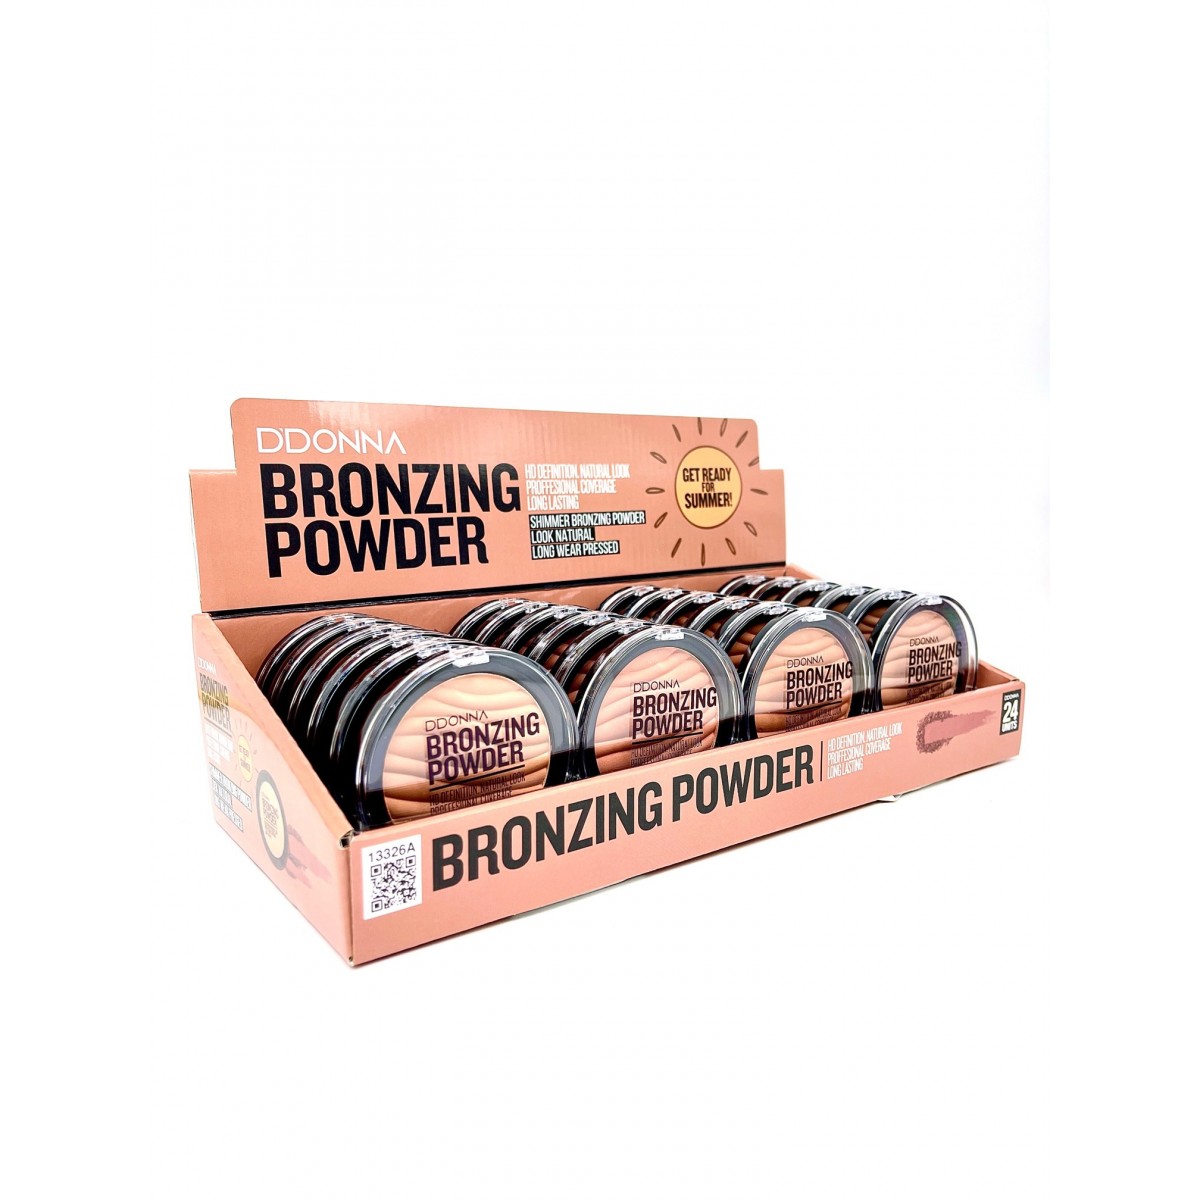 Bronzing Powder Ddonna A